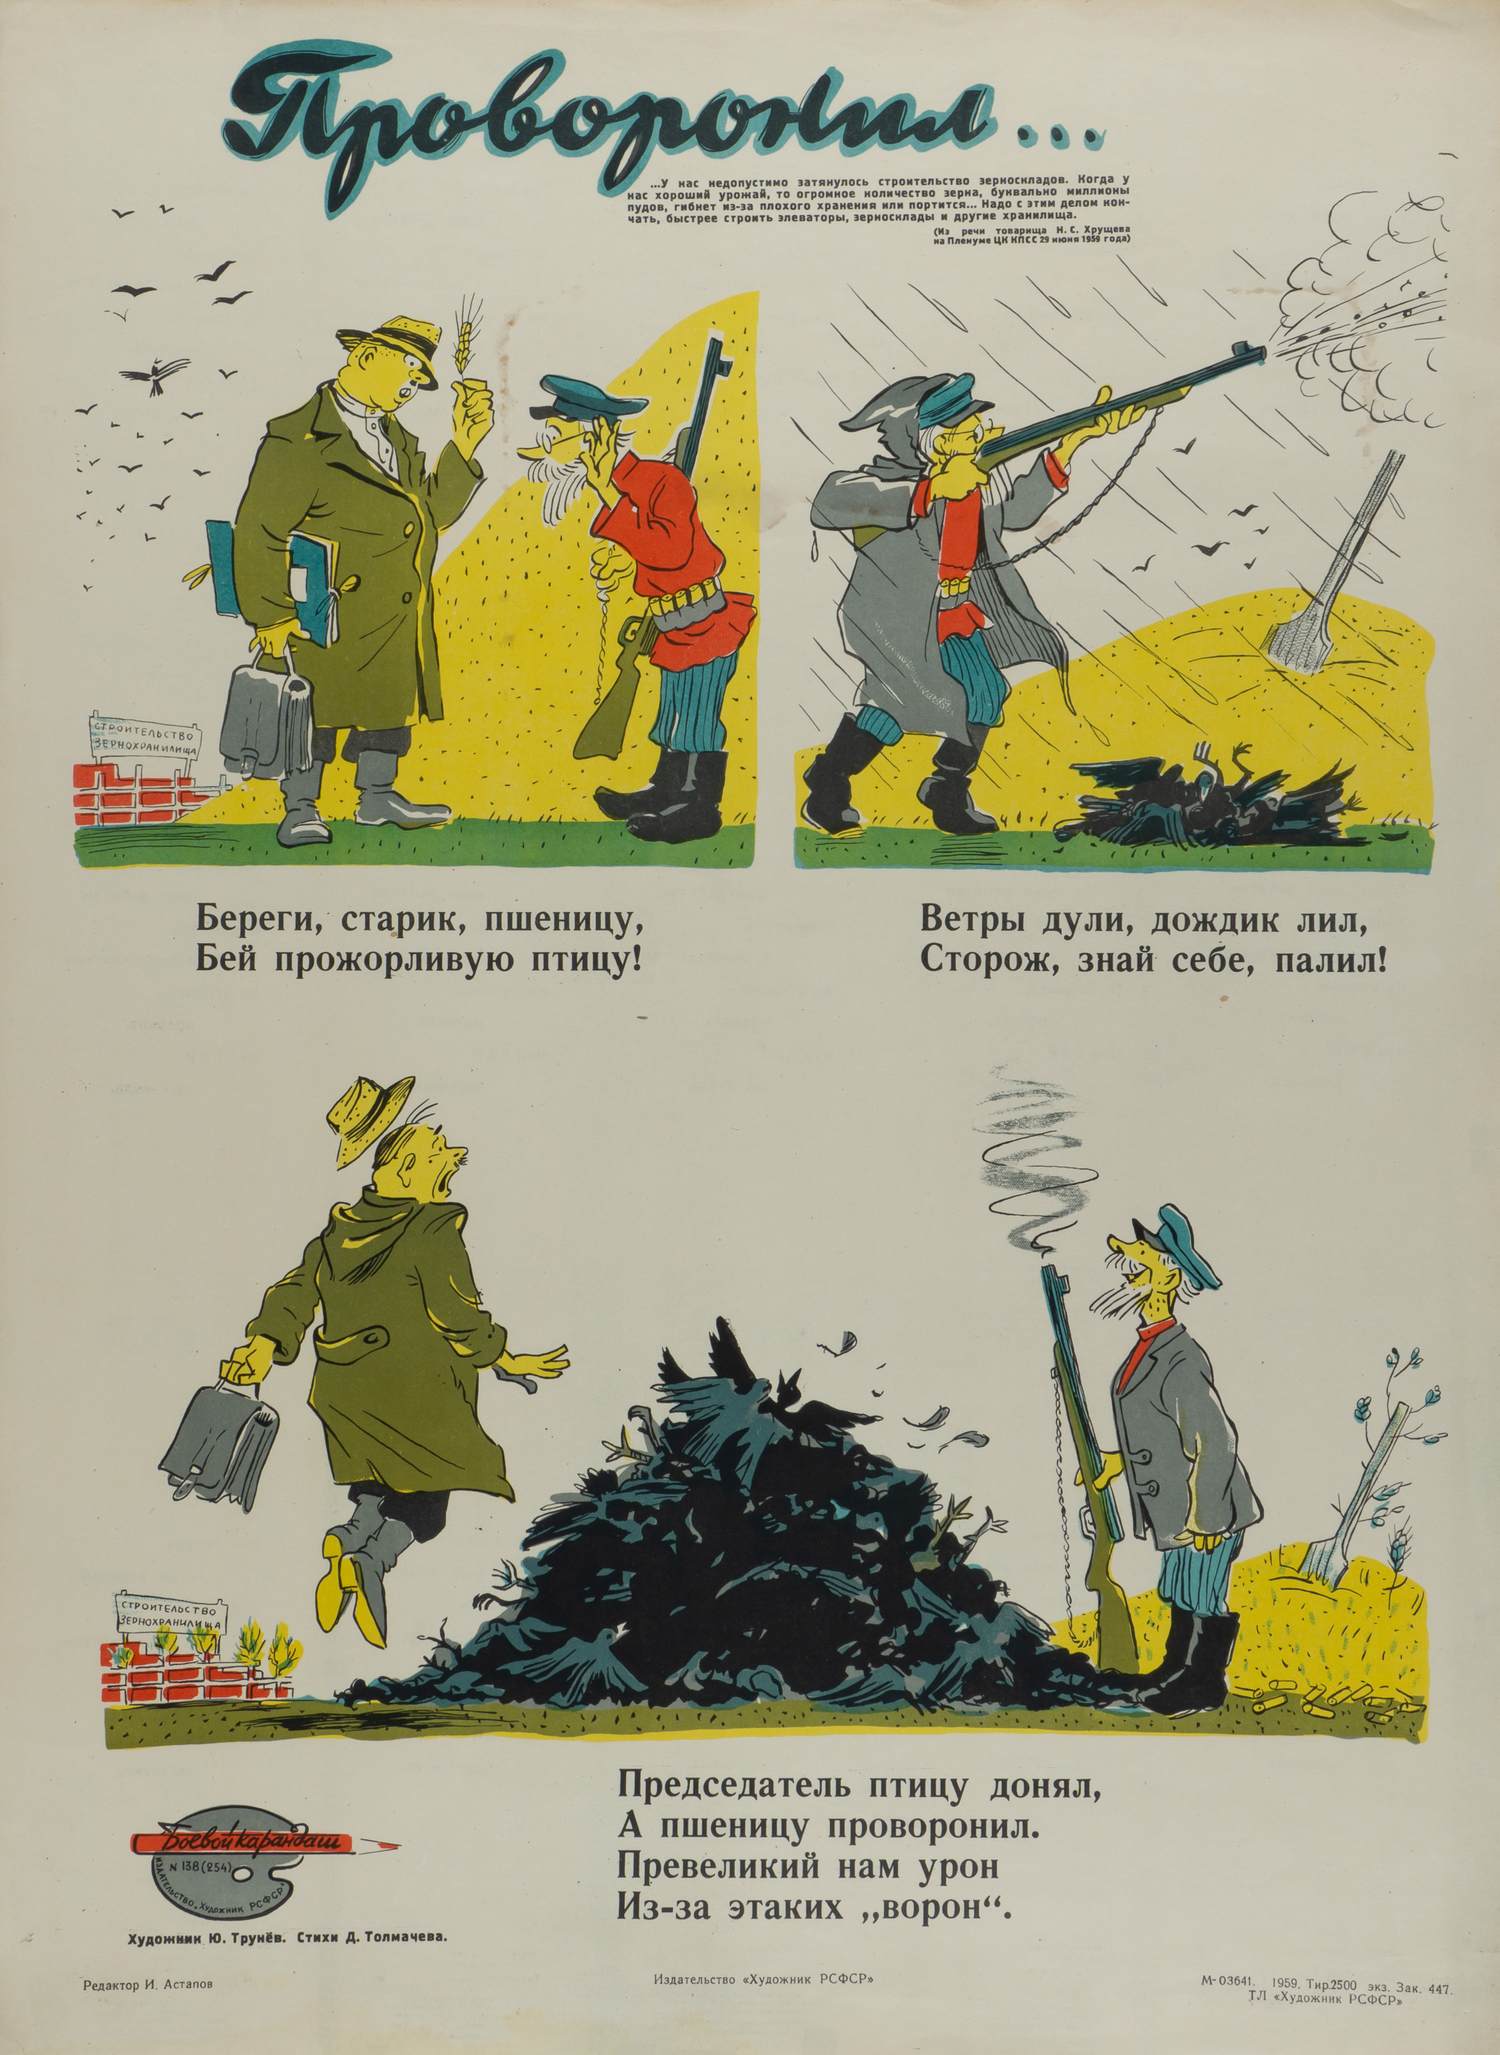 («Боевой карандаш») Трунёв Ю.В. Плакат «Проворонил...» (Л., 1959).